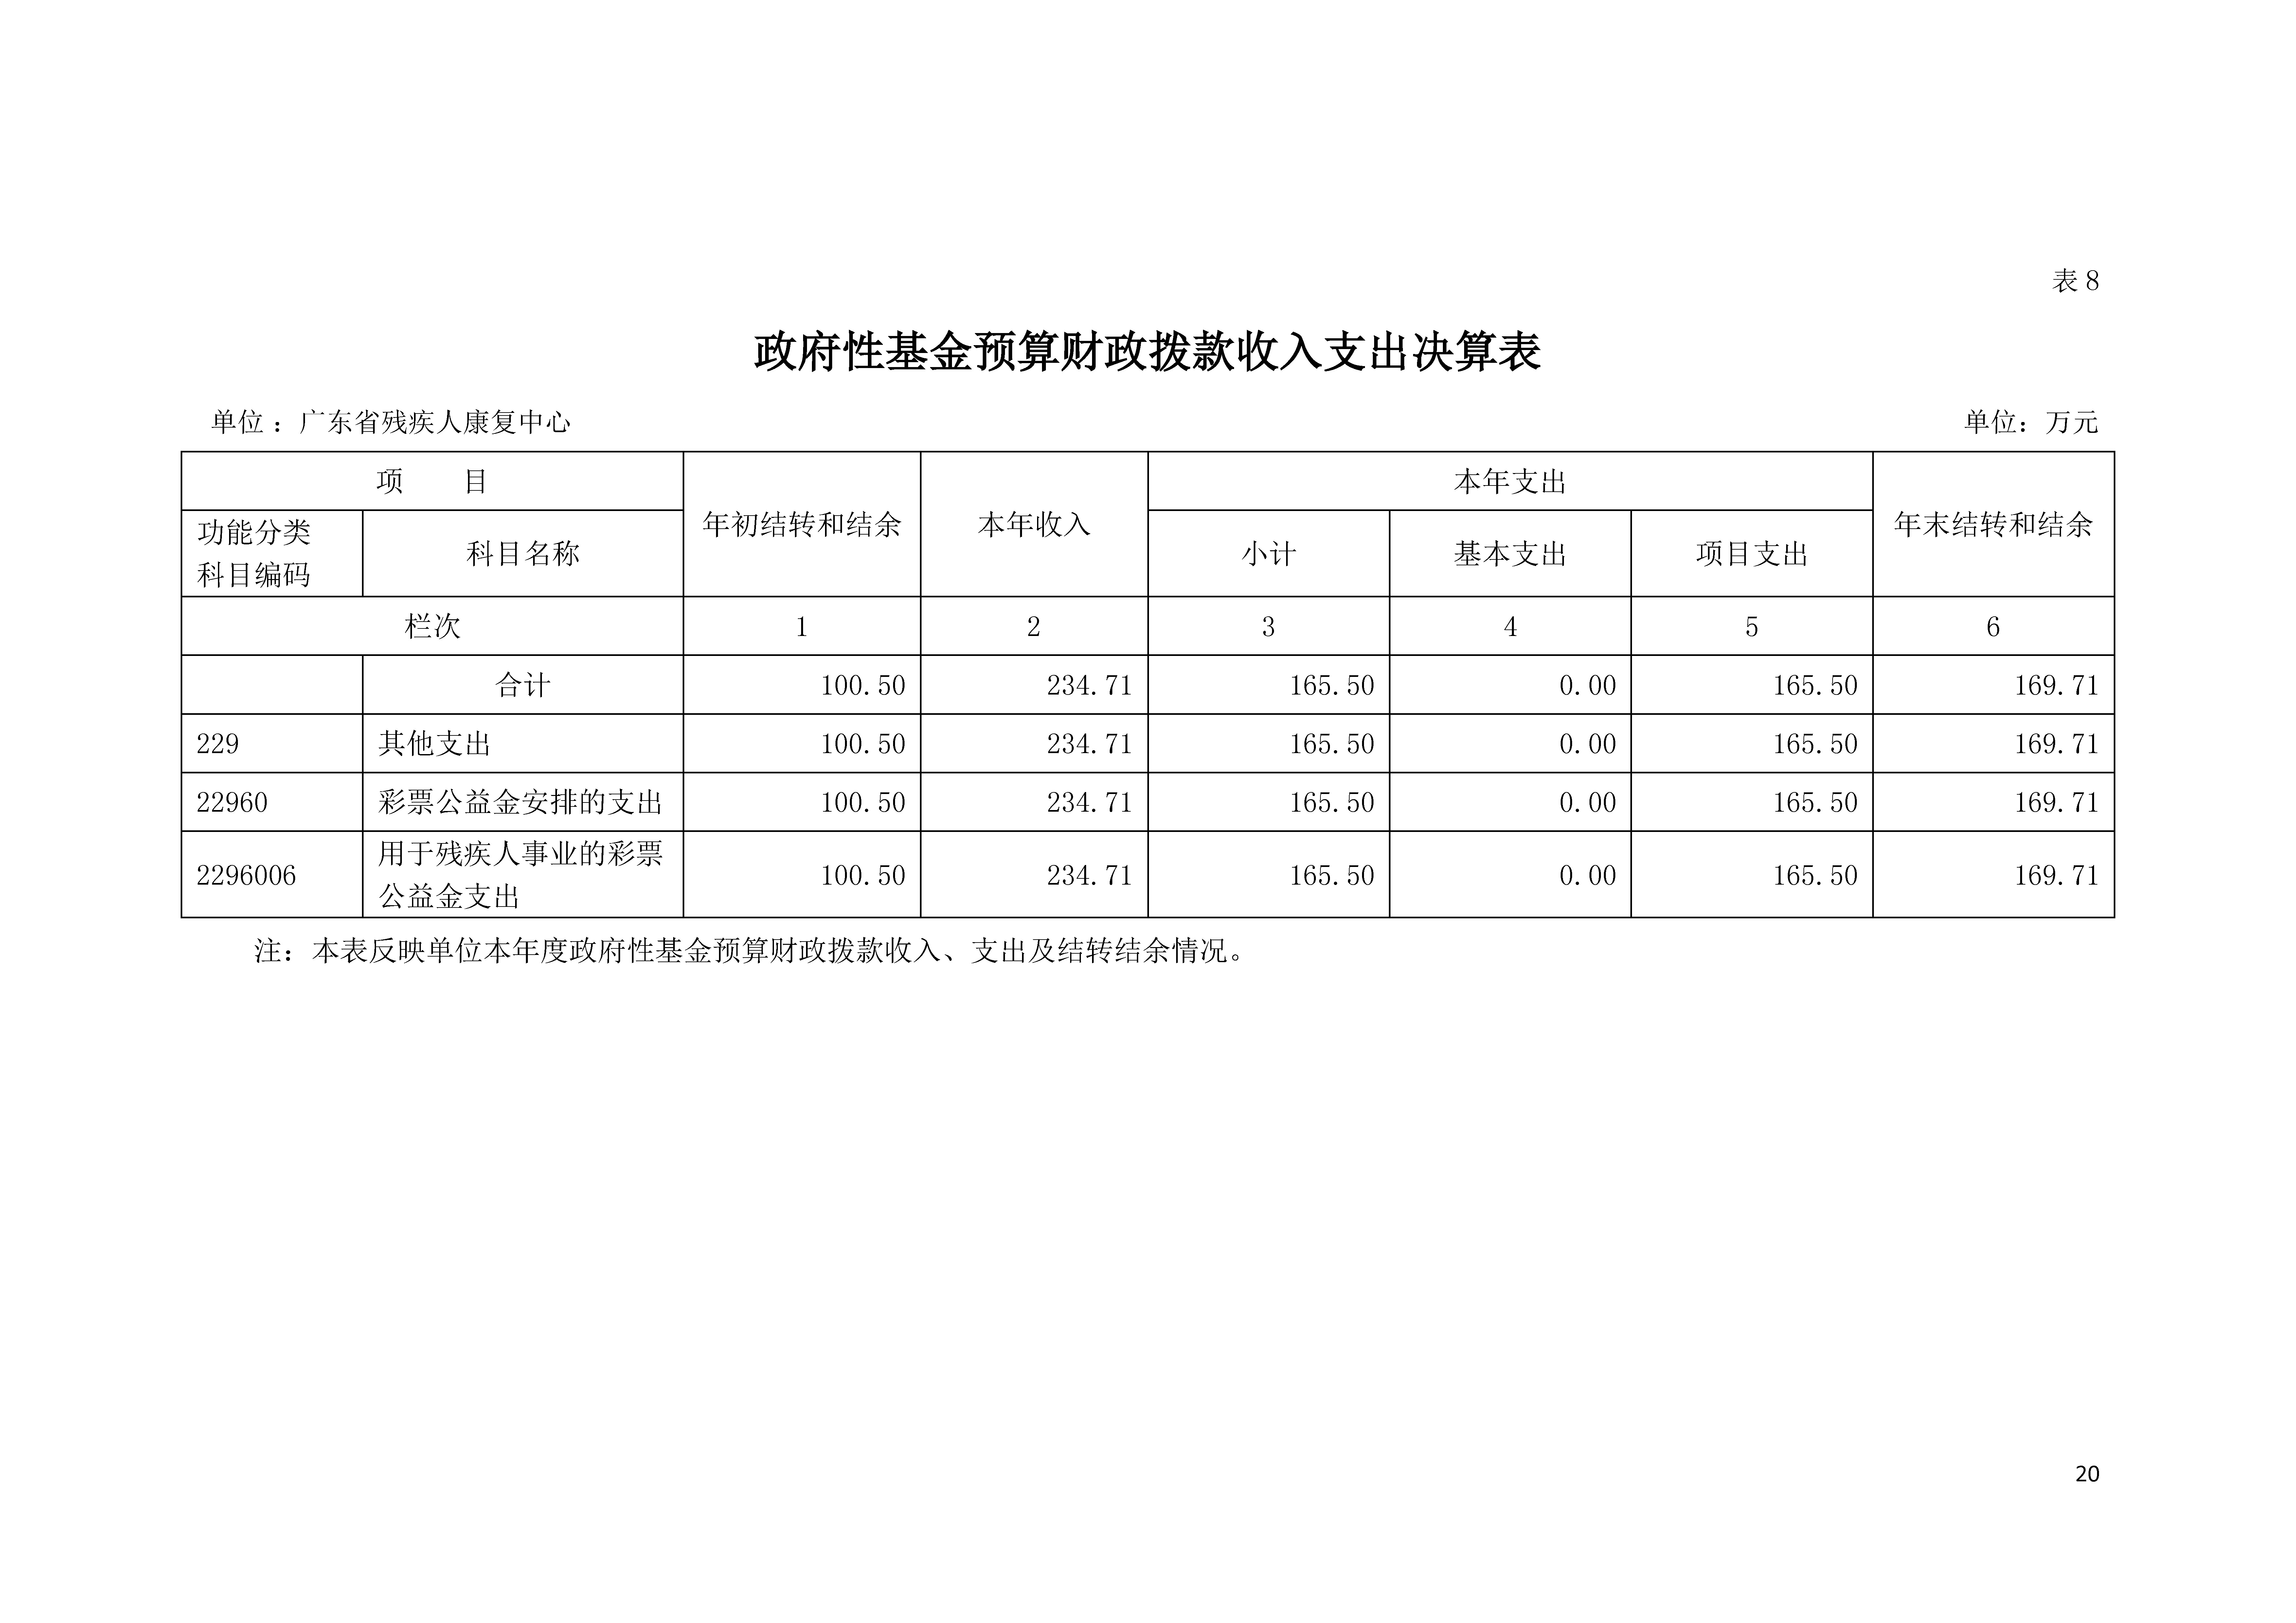 2021年广东省残疾人康复中心部门决算 0629_页面_20.jpg